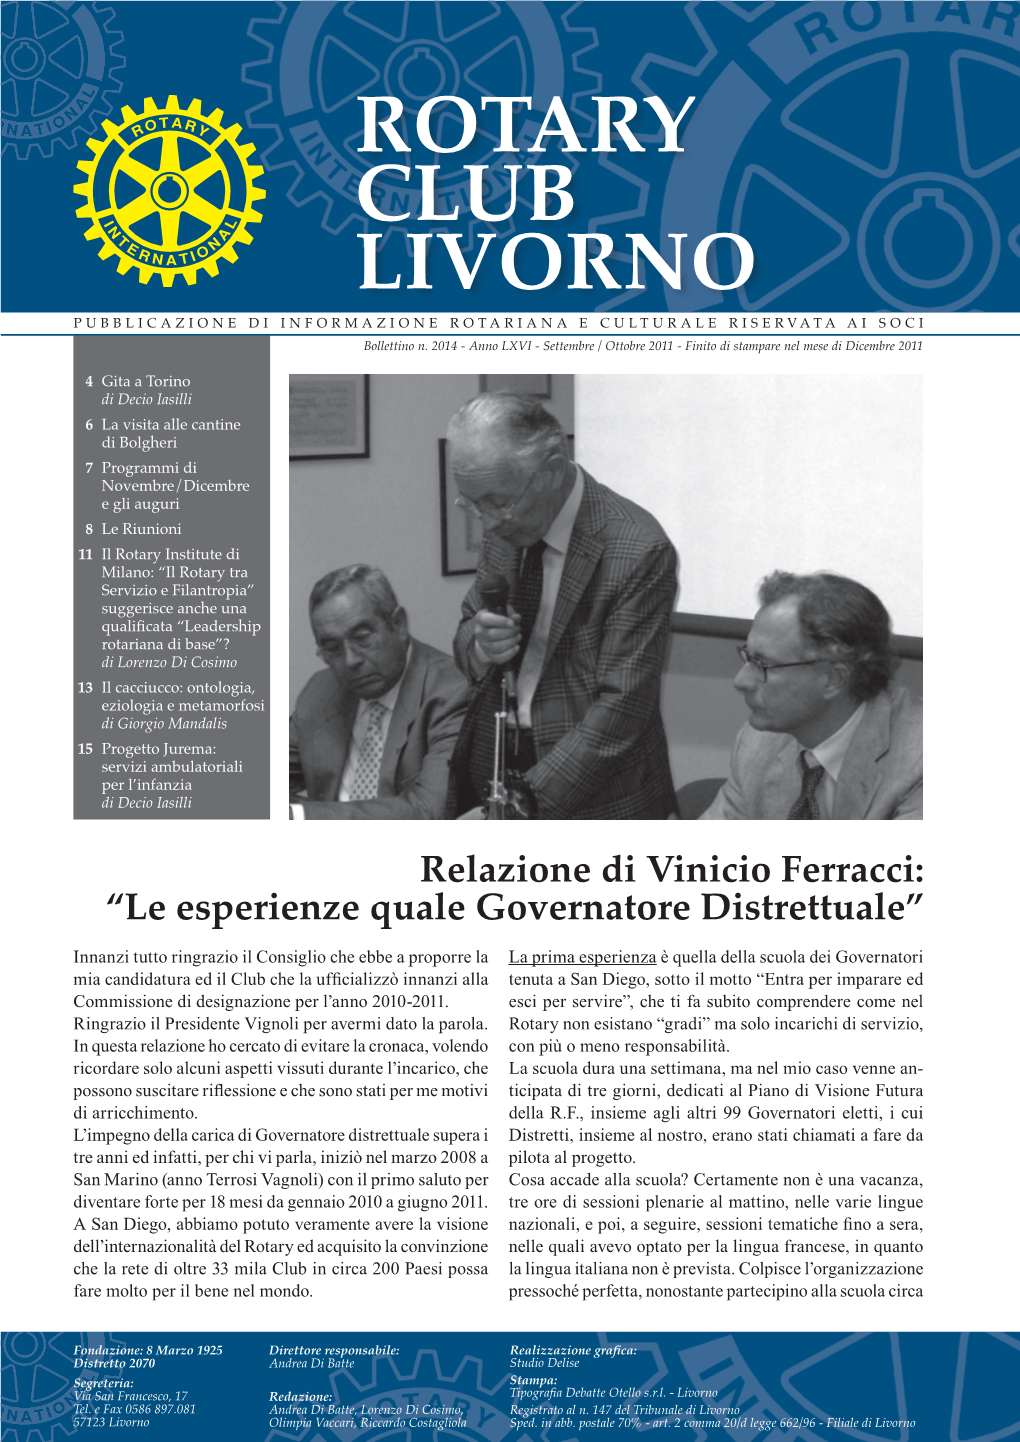 Relazione Di Vinicio Ferracci